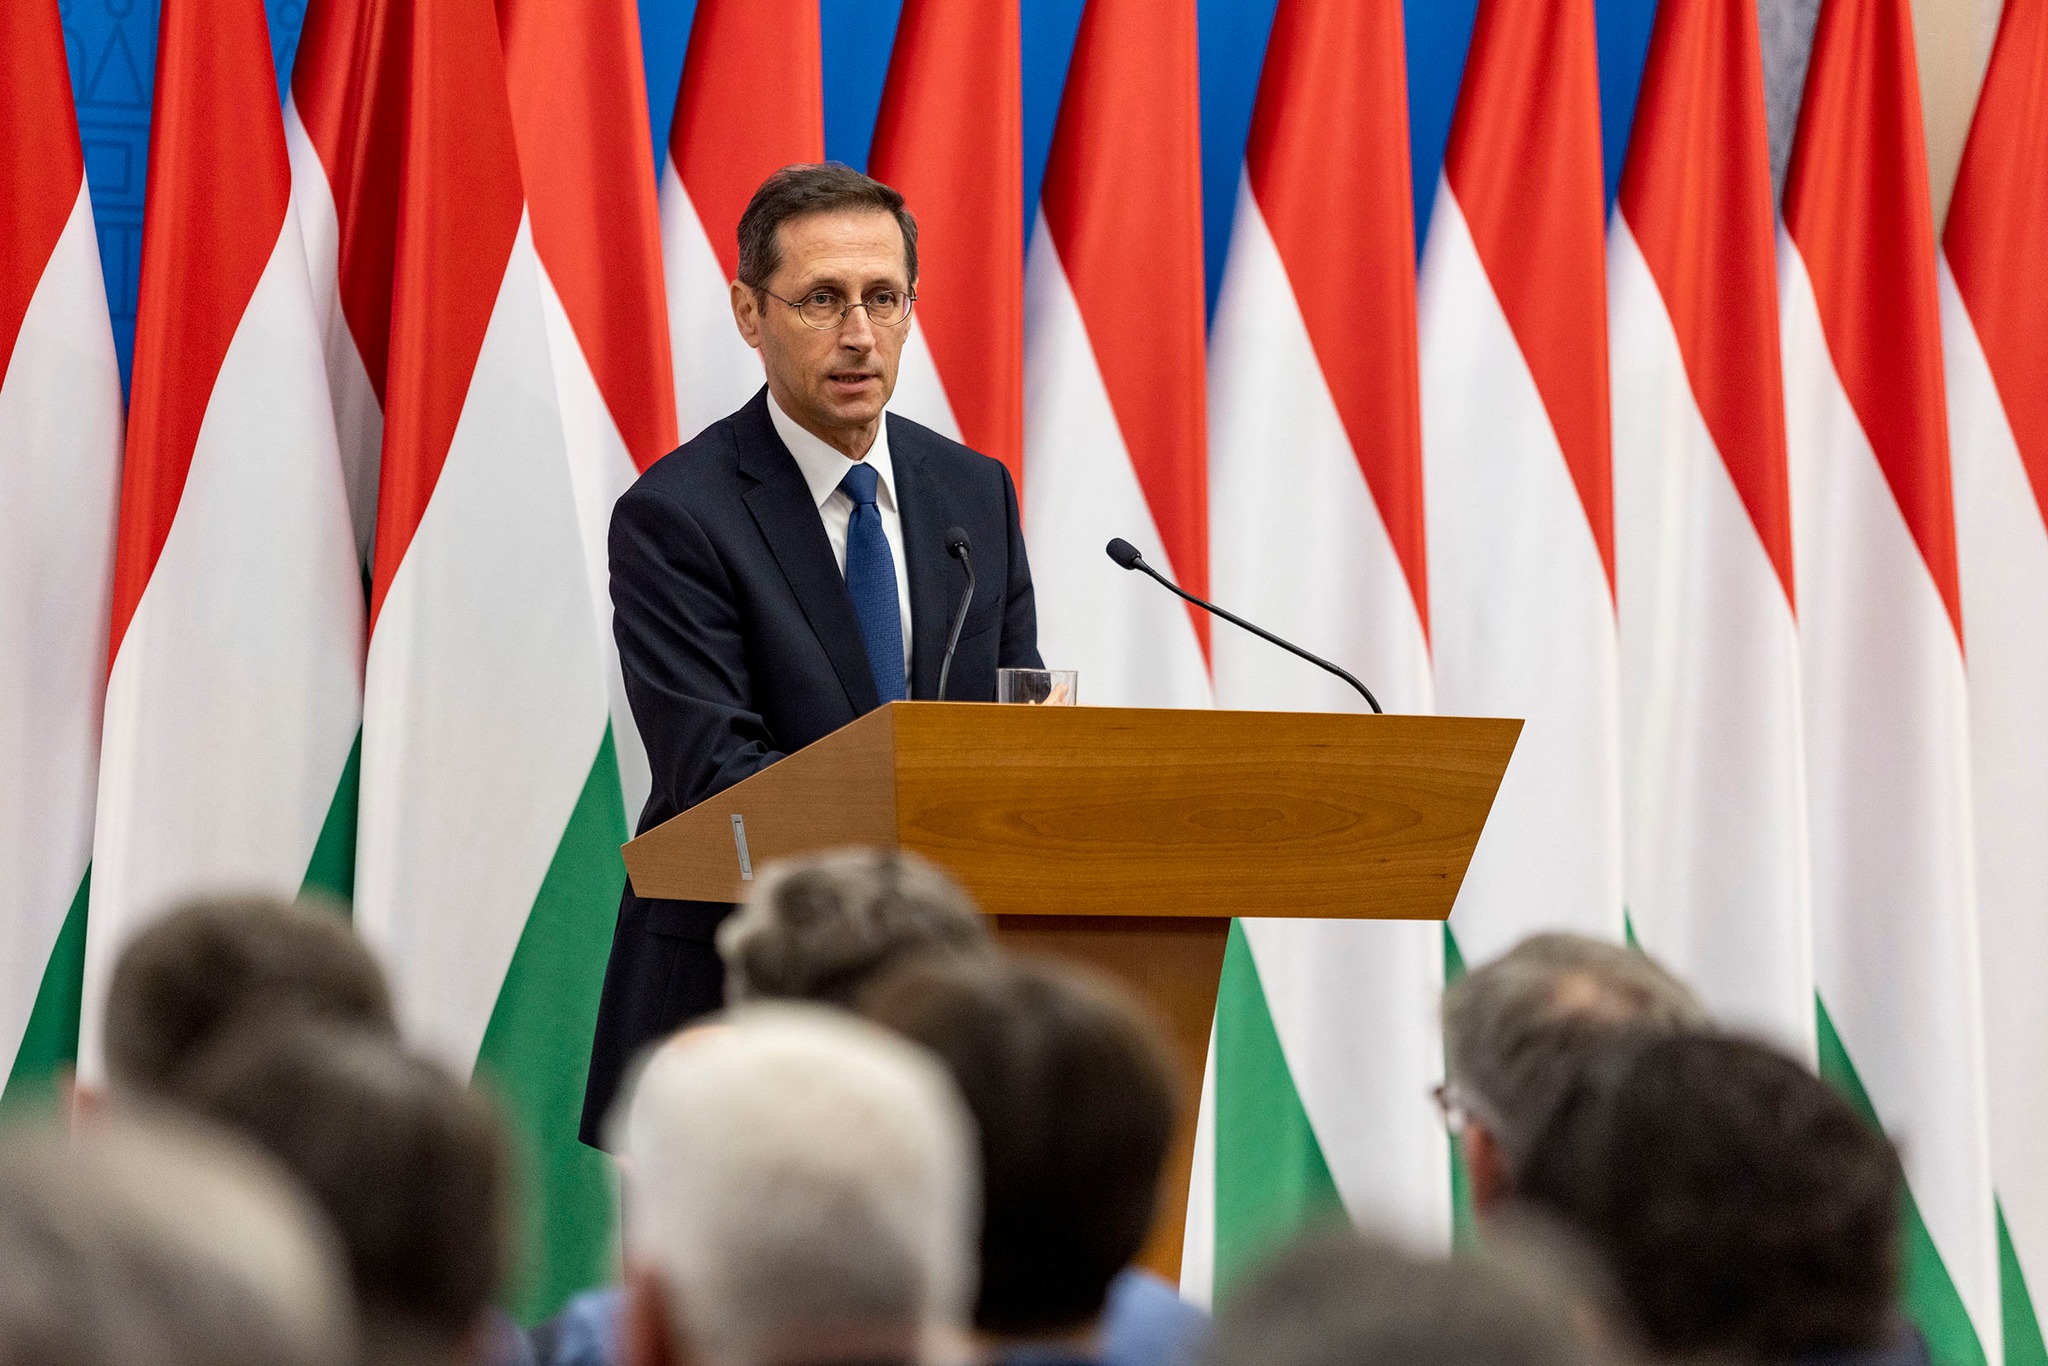 Varga Mihály elárulta felkérte-e Orbán Viktor az MNB élére 